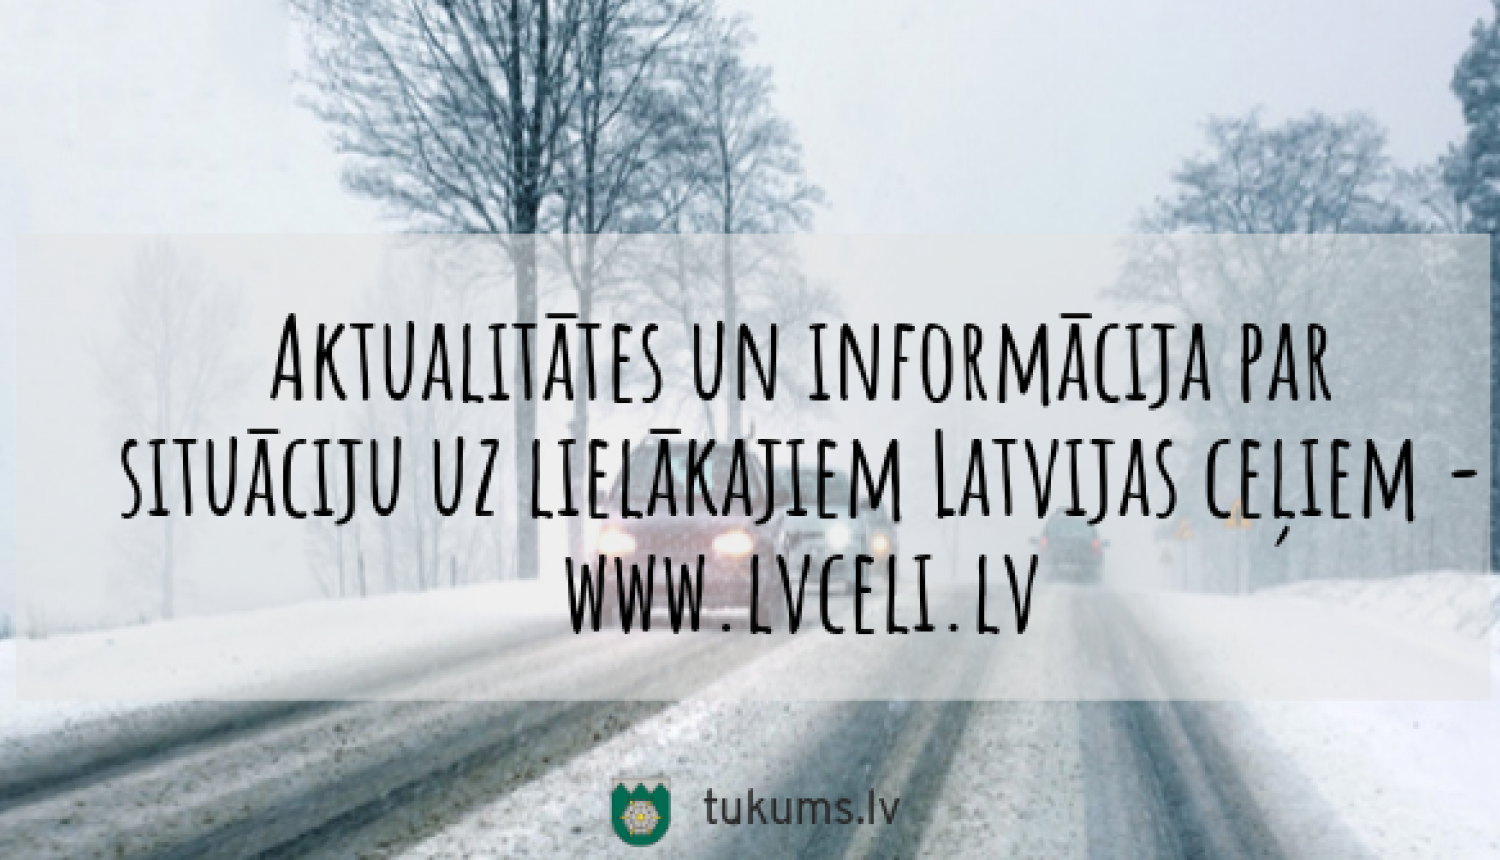 Informācija par situāciju uz lielākajiem ceļiem - www.lvceli.lv